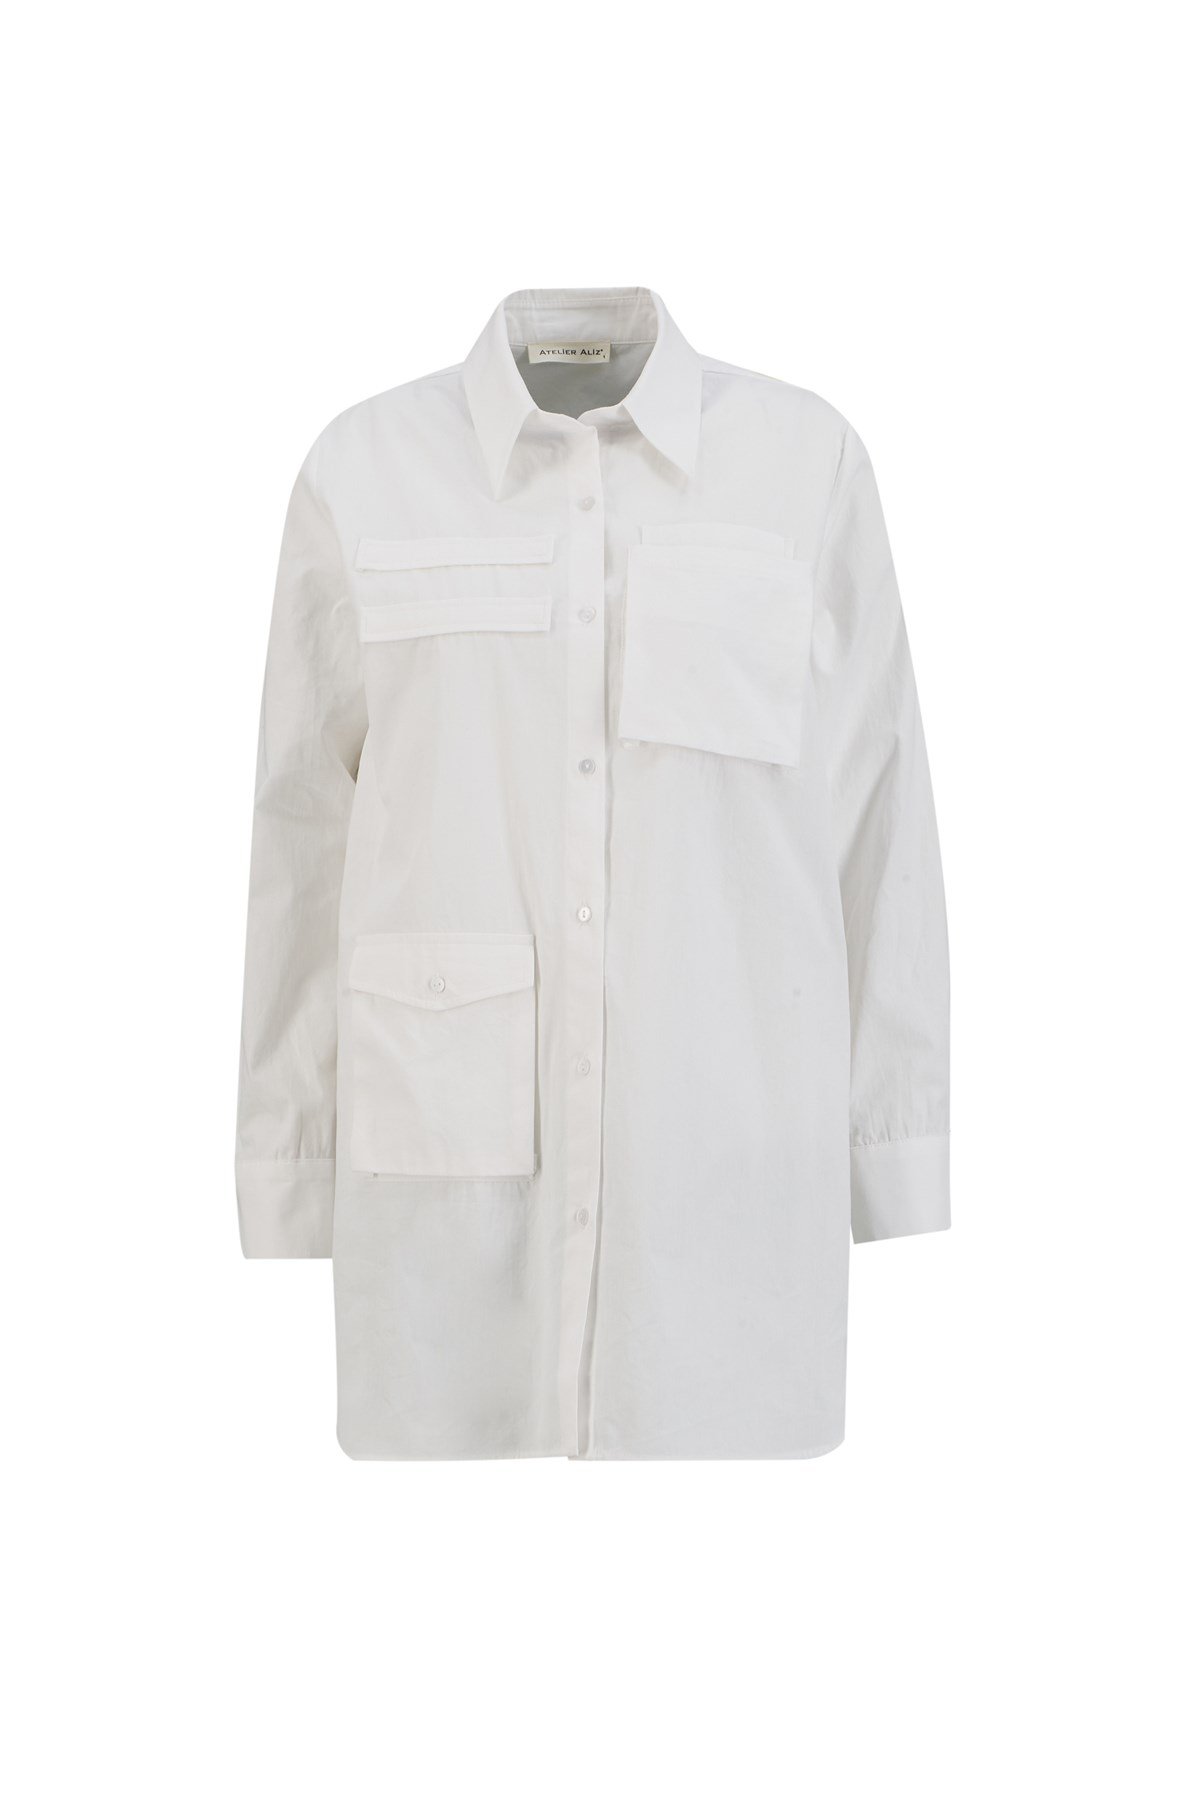 Cep Detaylı Poplin Gömlek Elbise Beyaz - Atelier Aliz